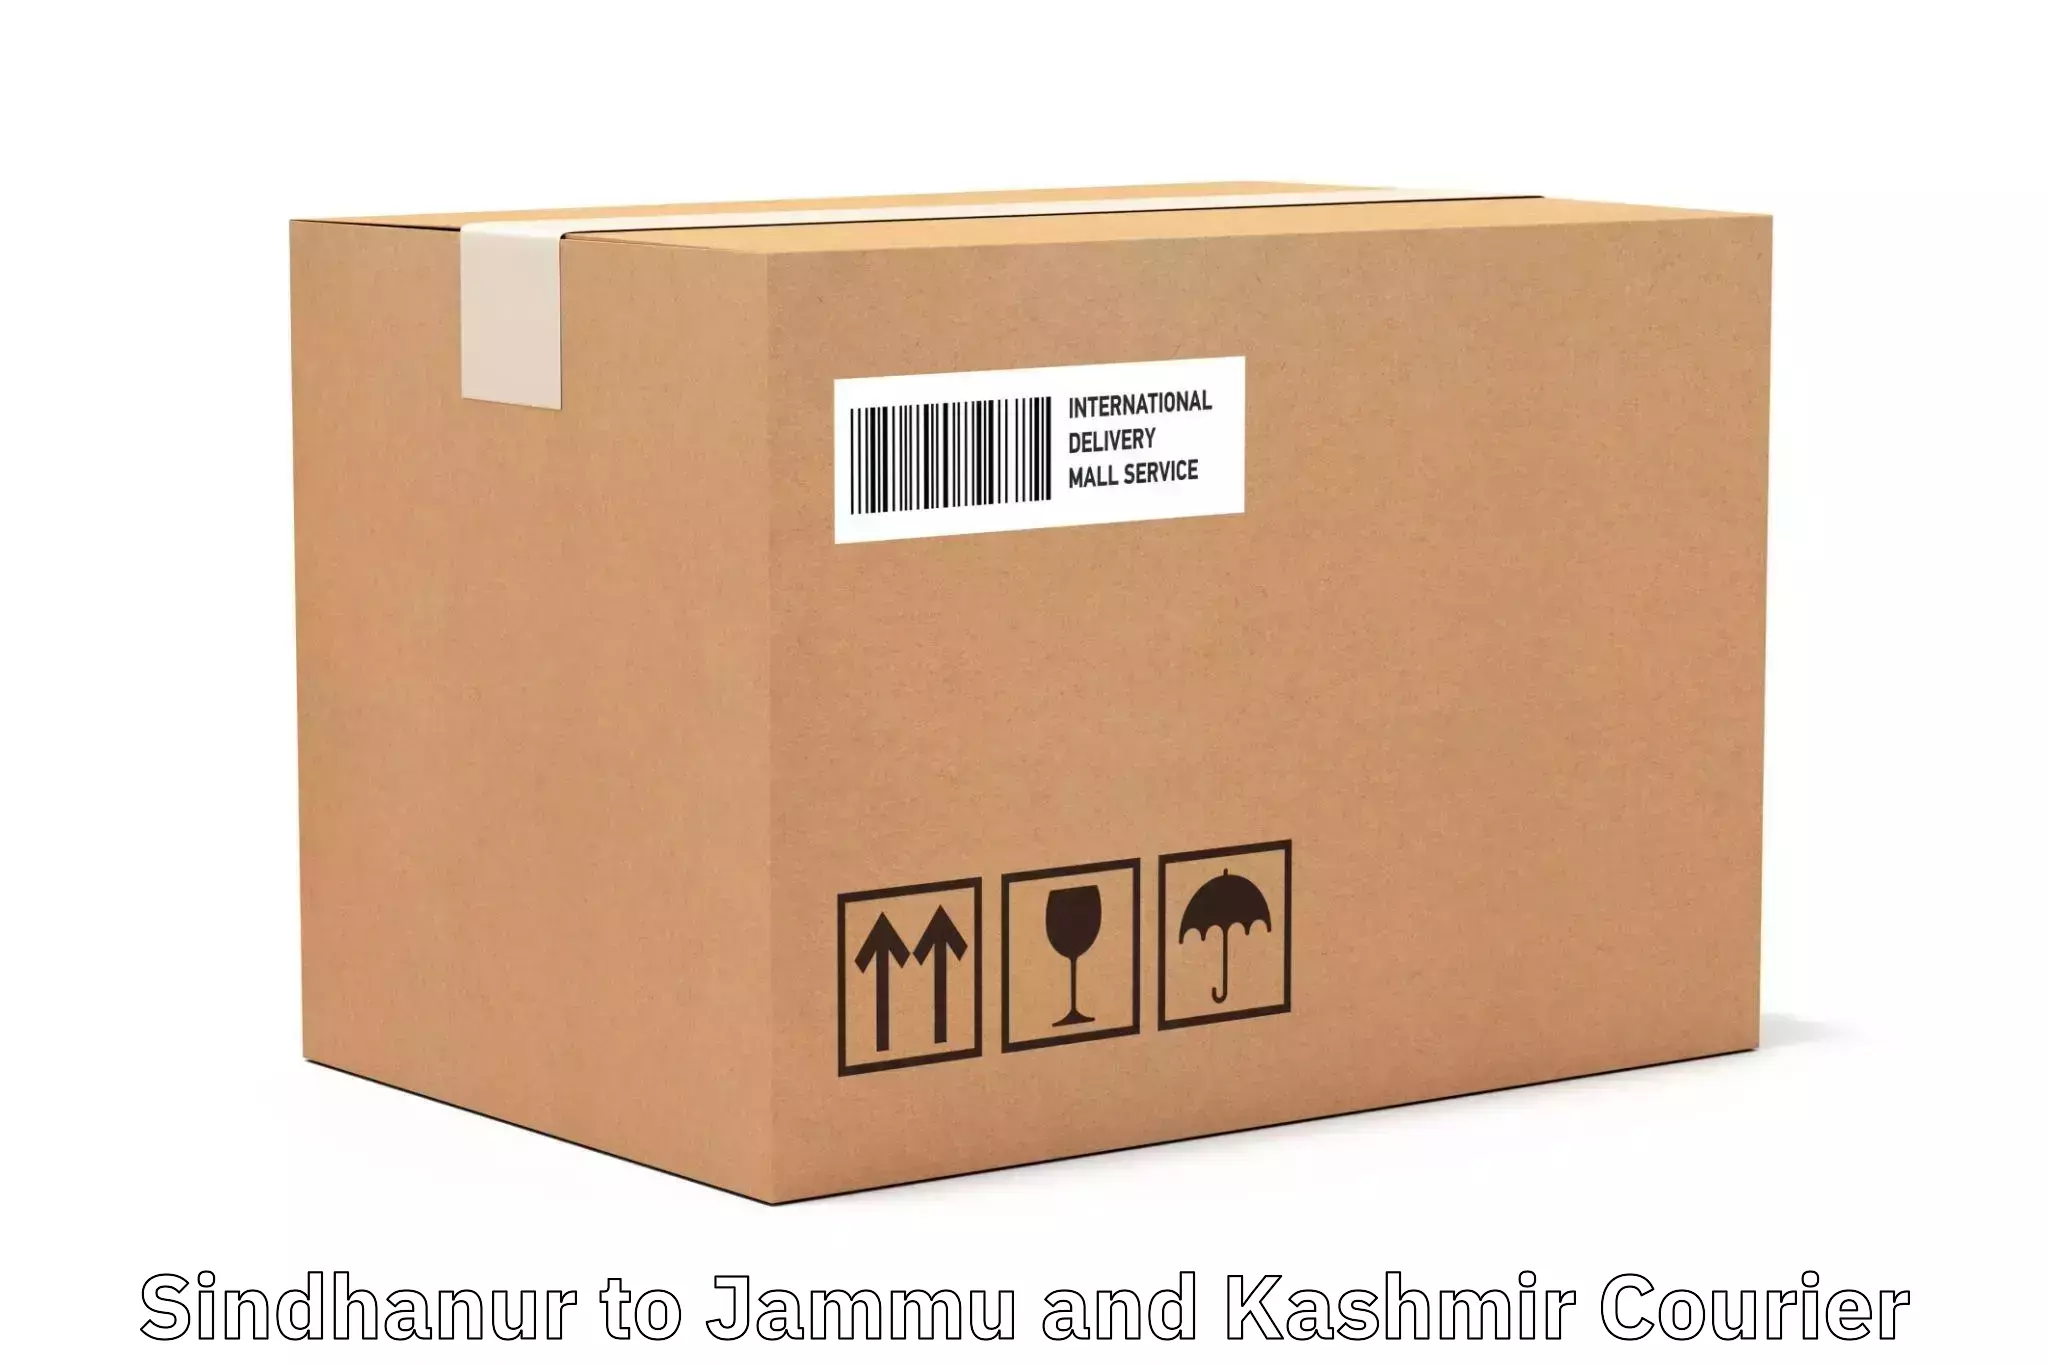 Affordable parcel rates Sindhanur to Jammu and Kashmir